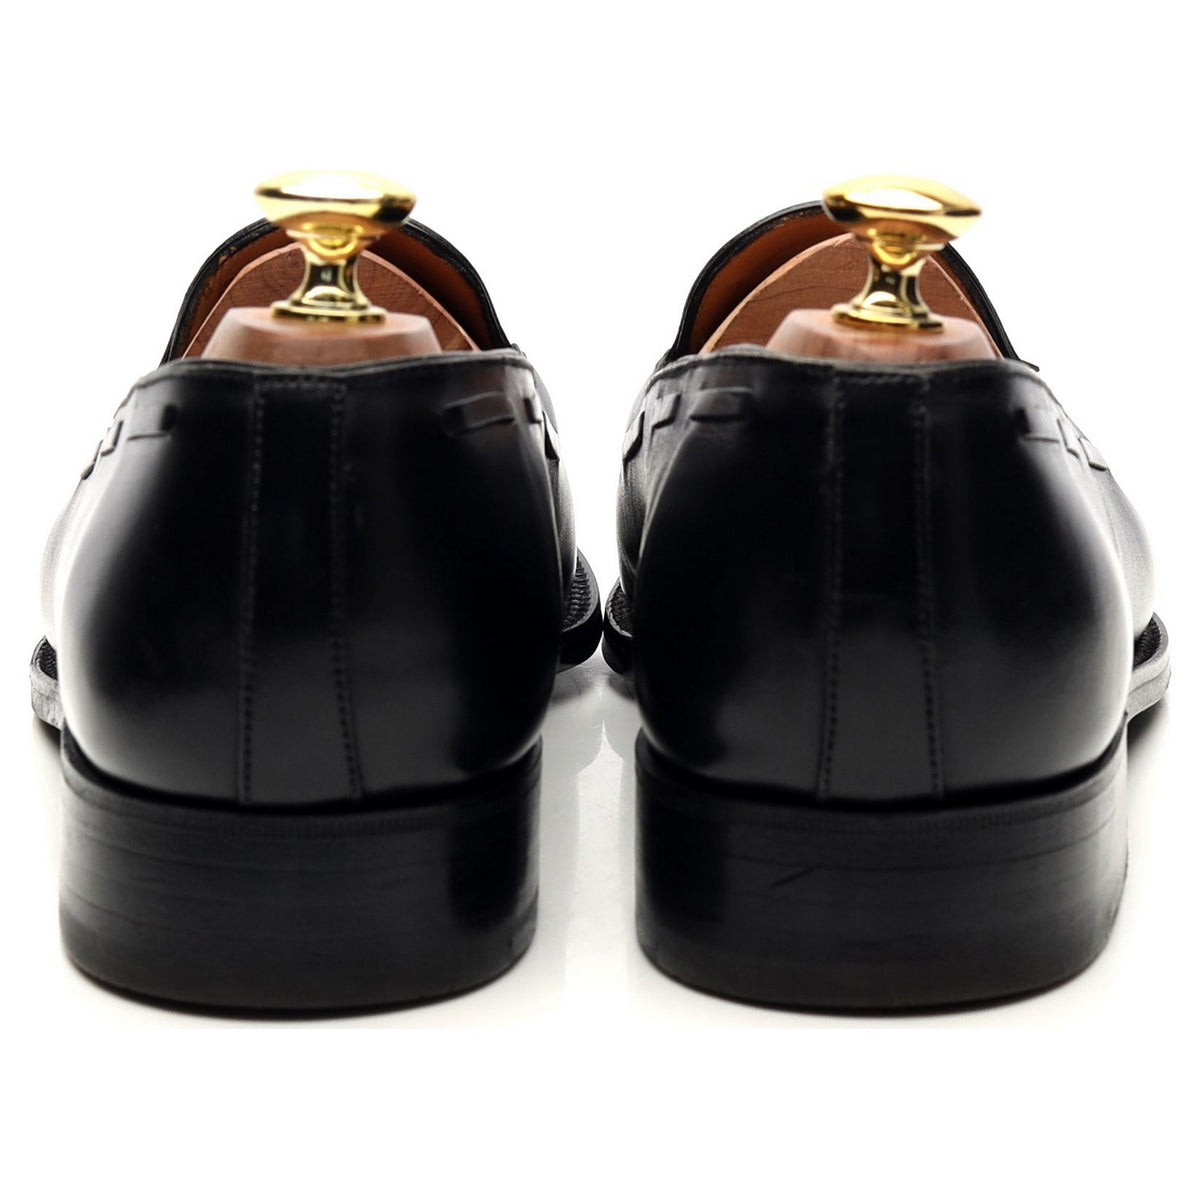 Black Leather Tassel Loafers 8 D UK 8.5